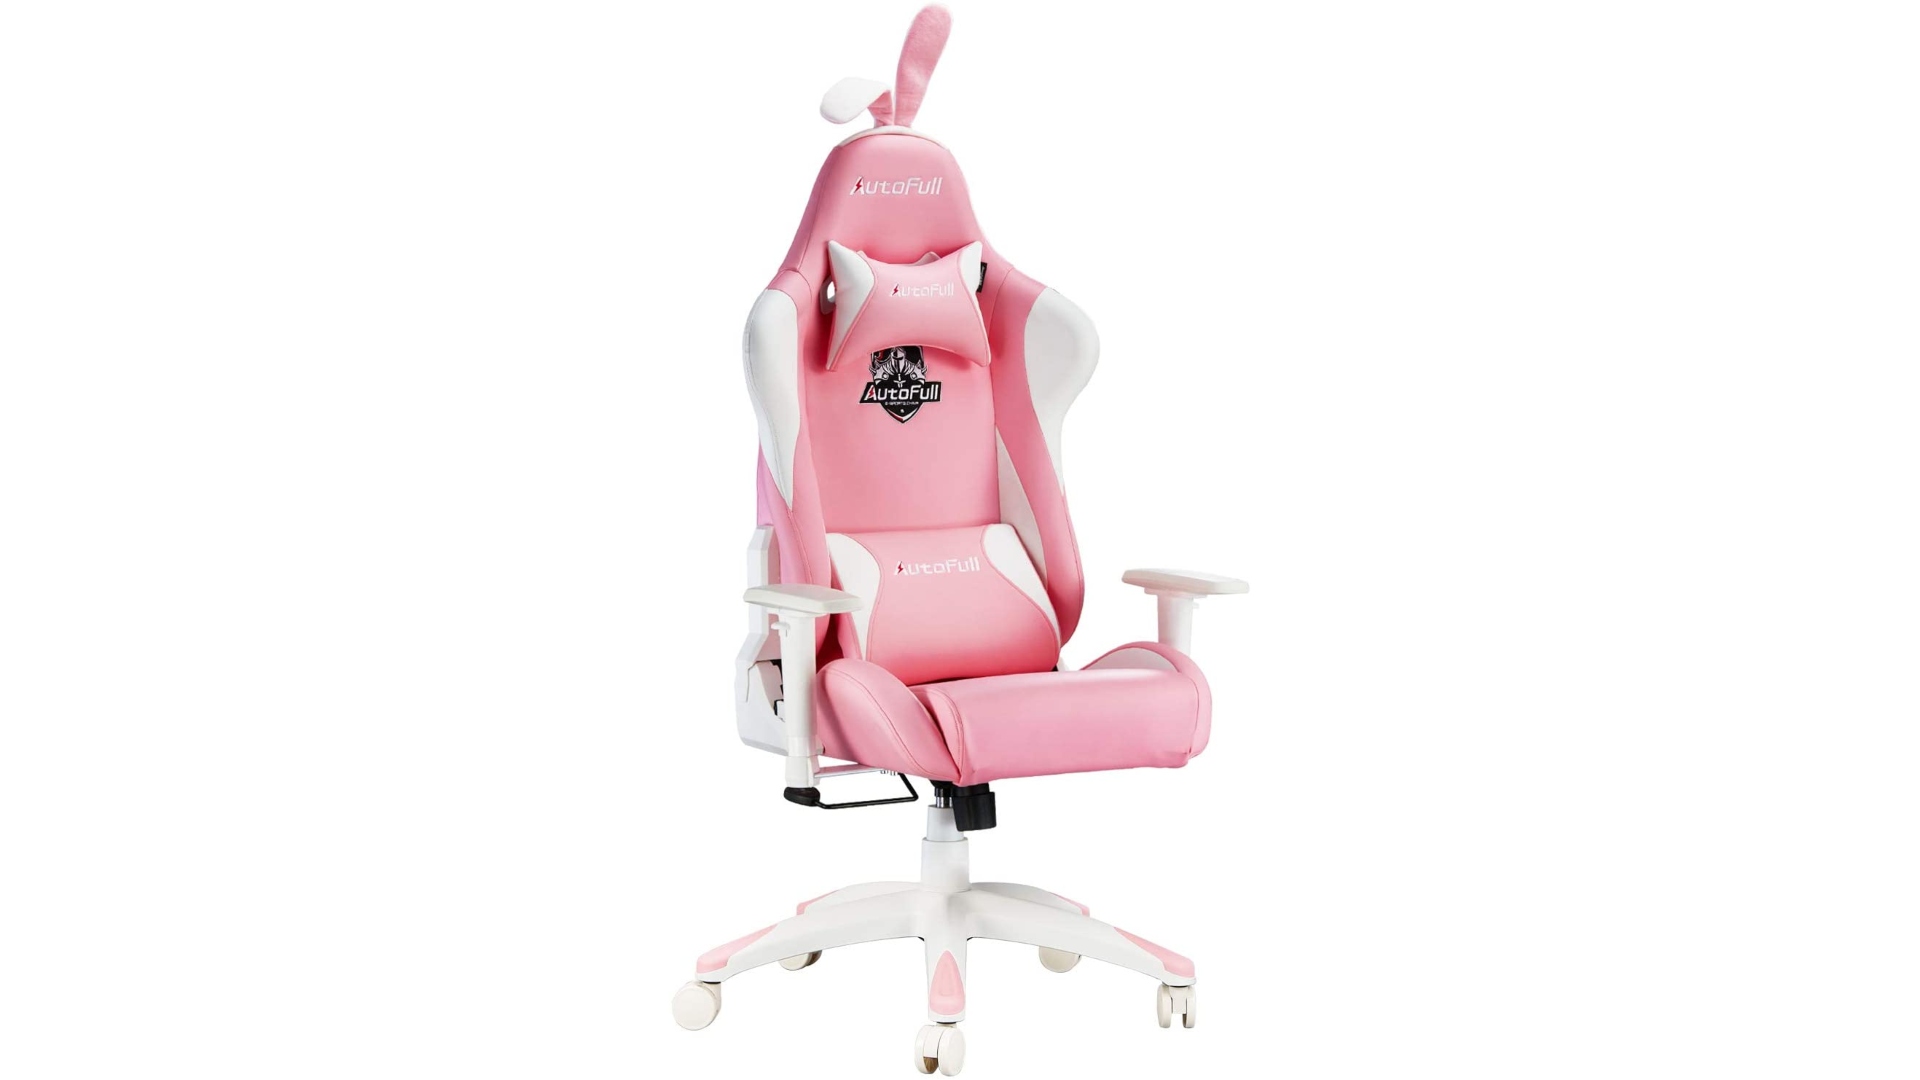 Best Amazon gaming chairs: the Autofull ergonomic pink gaming chair.